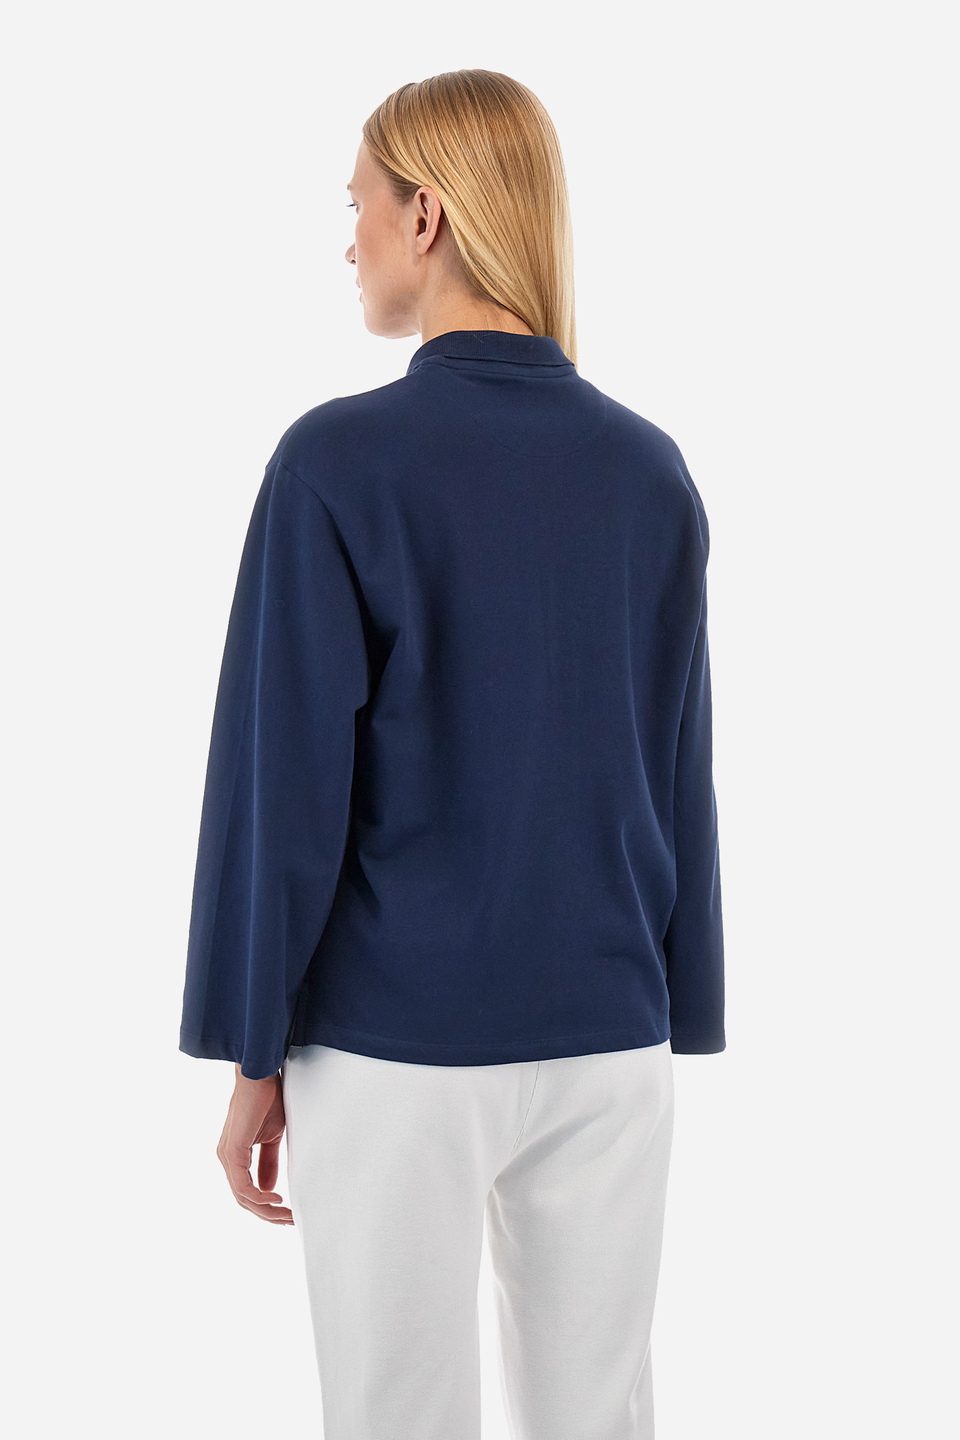 Damen -Poloshirt regular fit - Welch | La Martina - Official Online Shop